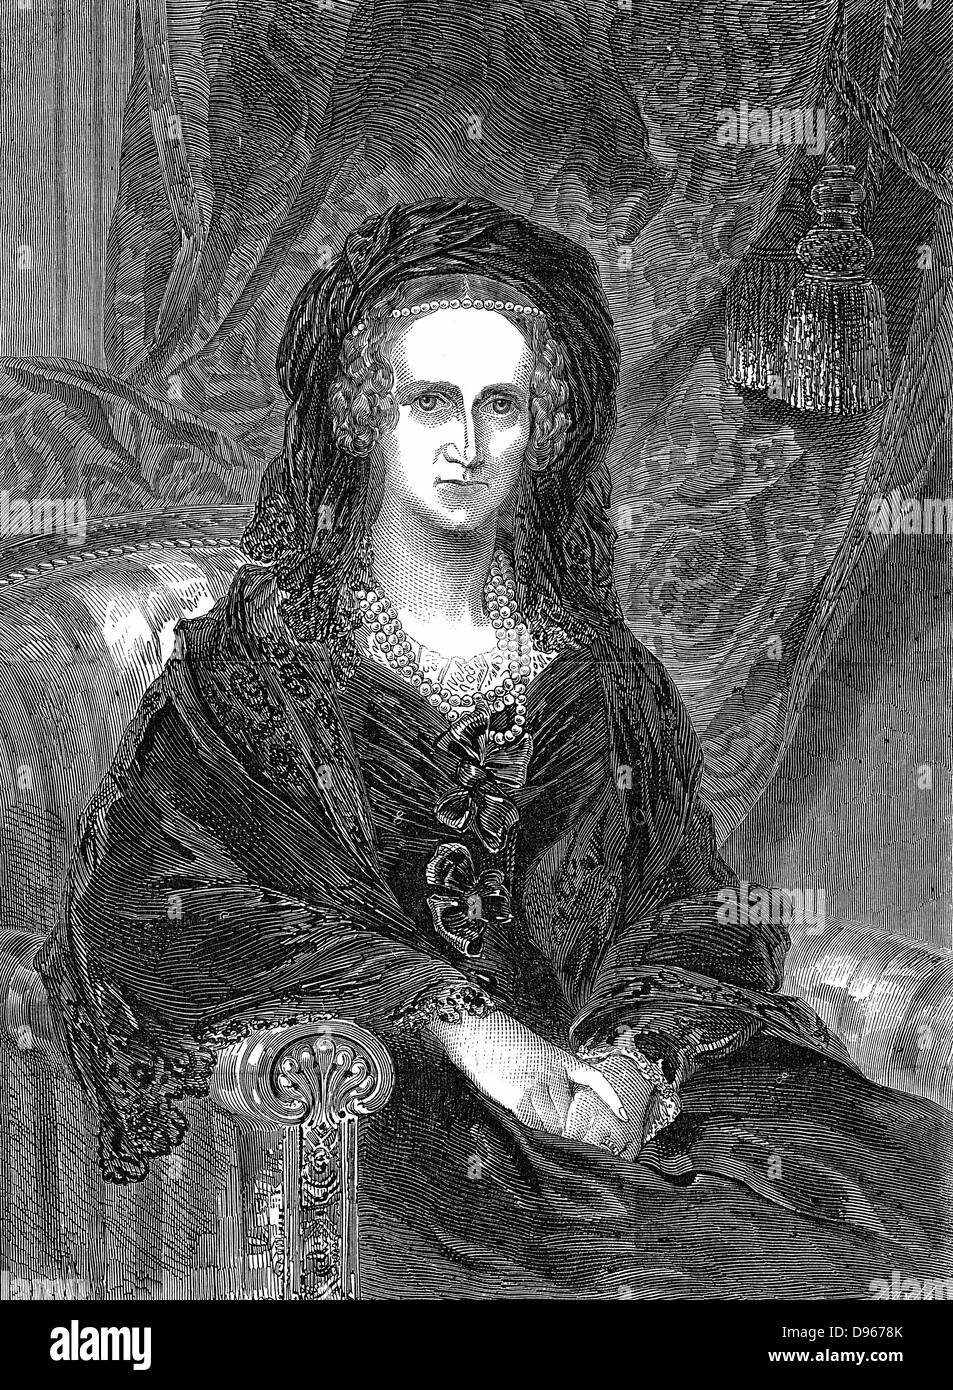 Adelaida de Sajonia-coburgo Meiningen (1792-1849) nacido en Alemania y de la reina consorte de Guillermo IV de Gran Bretaña (1830-37). Grabado de Adelaida como viuda publicado 1849 Foto de stock